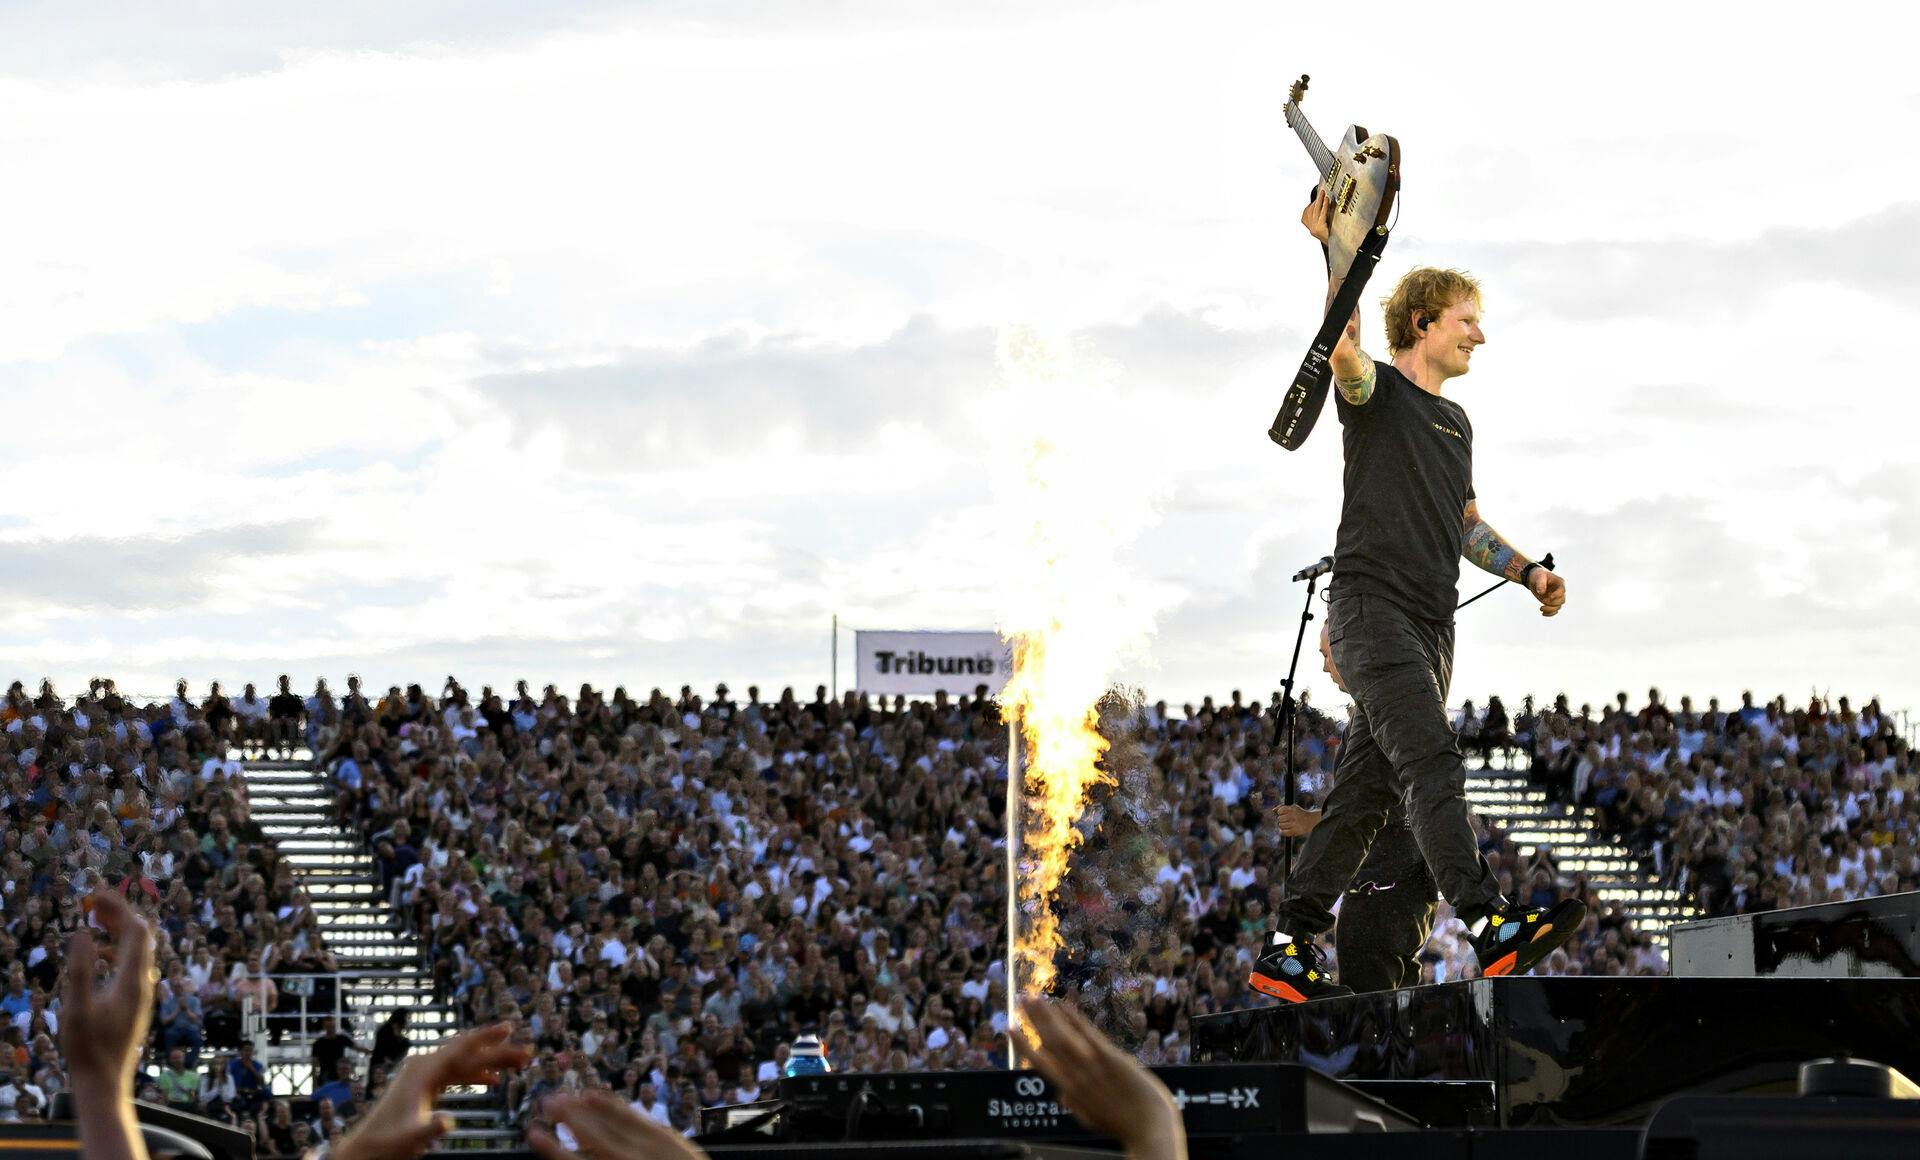 I 2022 gennemførte Ed Sheeran også fire koncerter med 160.000 gæster. Den rekord slår han nu med 20.000 ekstra. Det sker næste år, hvor 180.000 får mulighed for at se ham i Danmark.